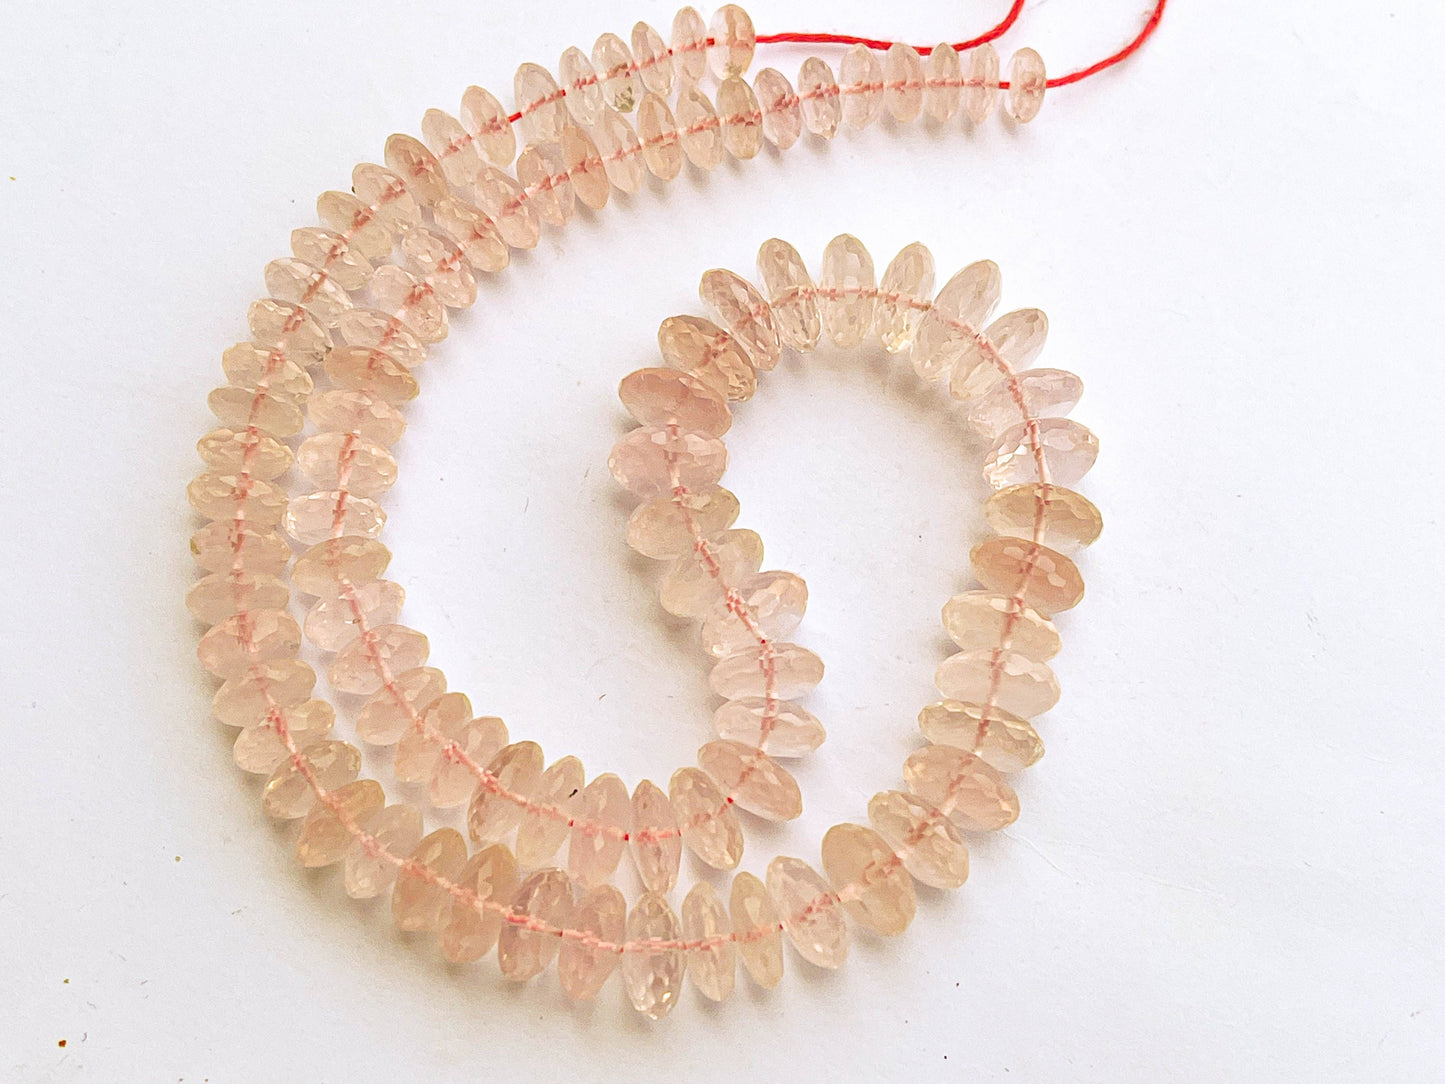 Rose Quartz Micro faceted rondelle shape German cut beads